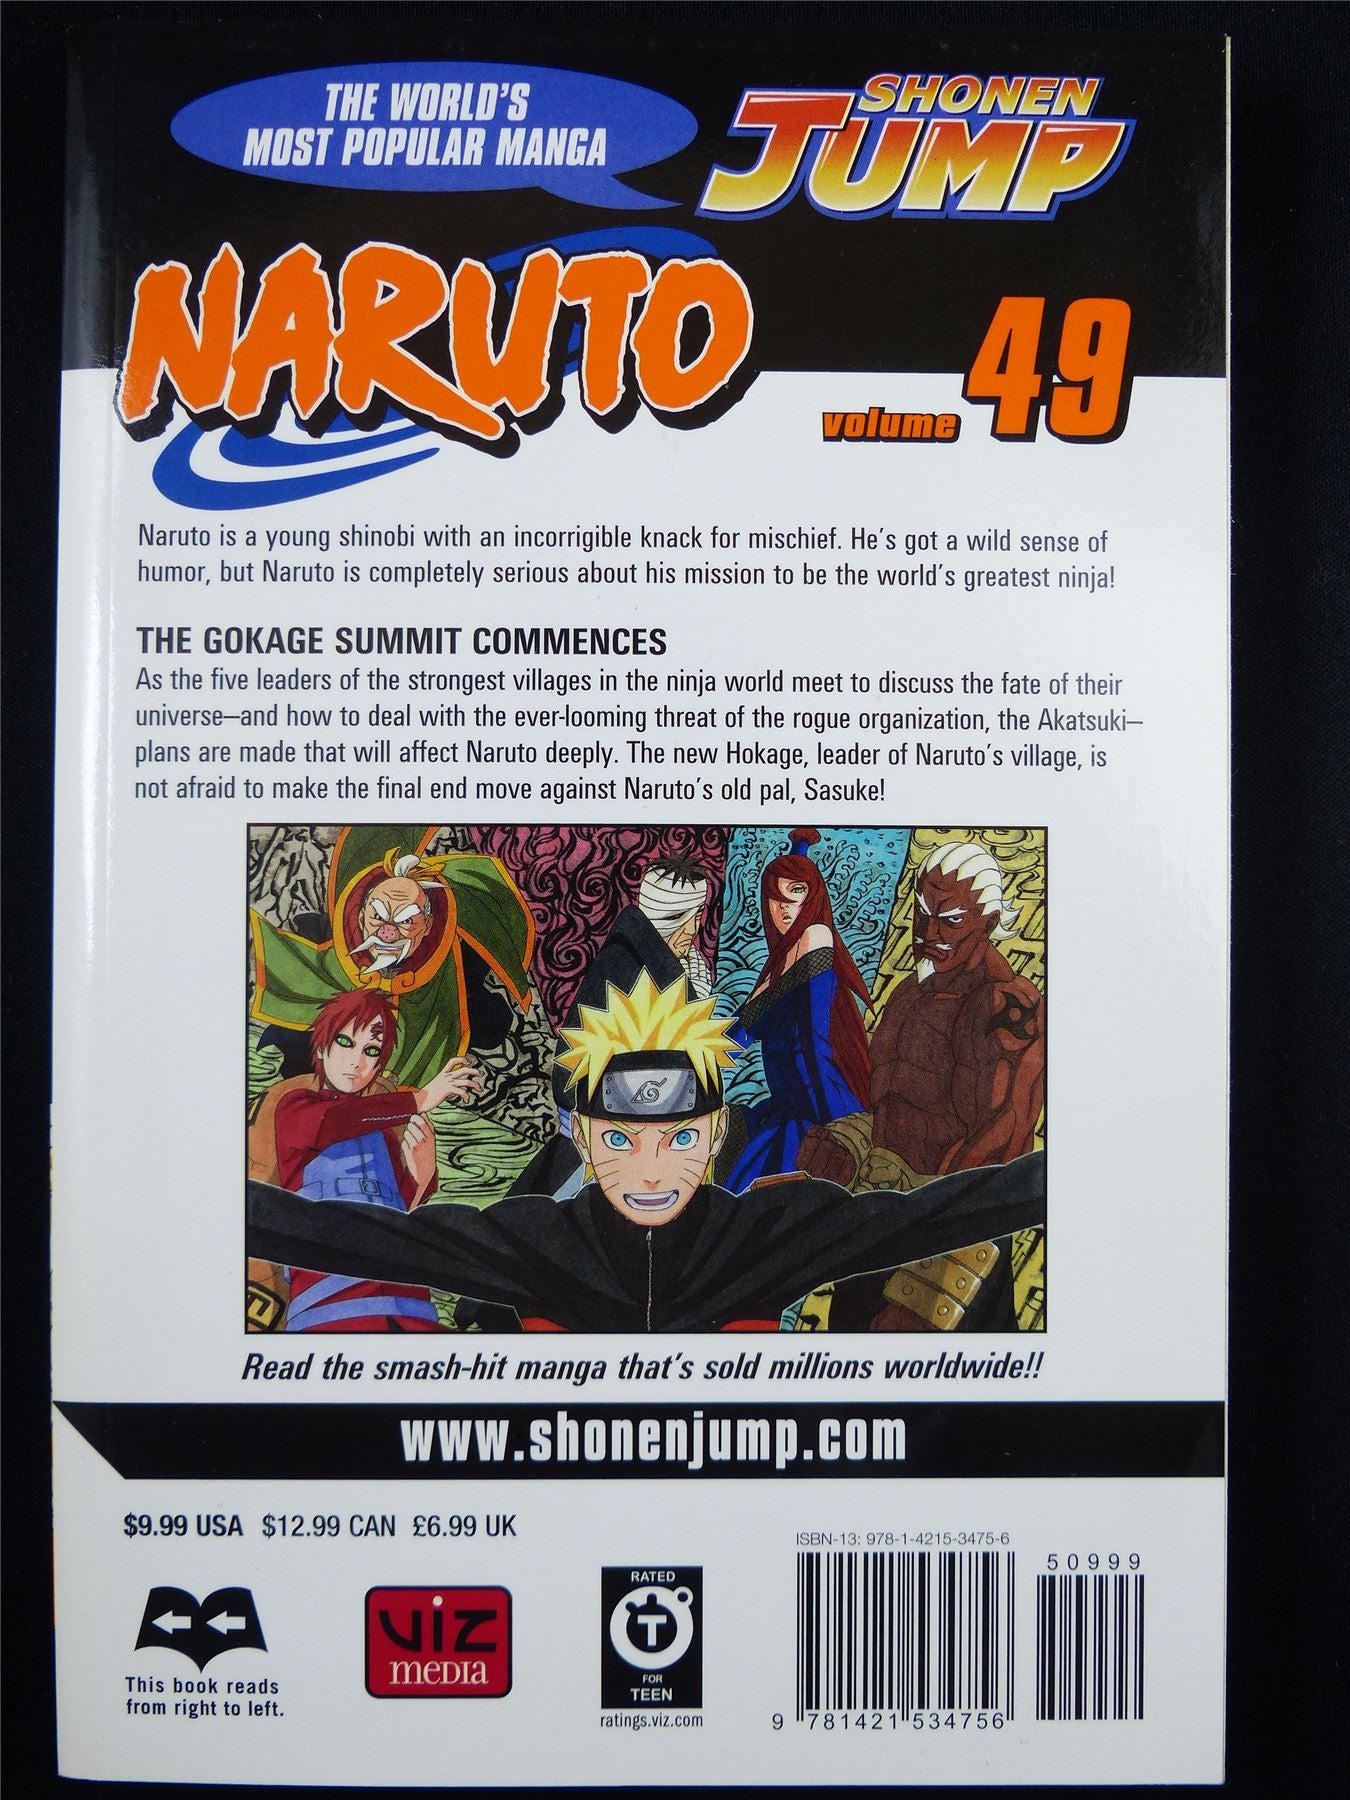 NARUTO Volume 49 - Shonen Jump Viz Manga #3HG